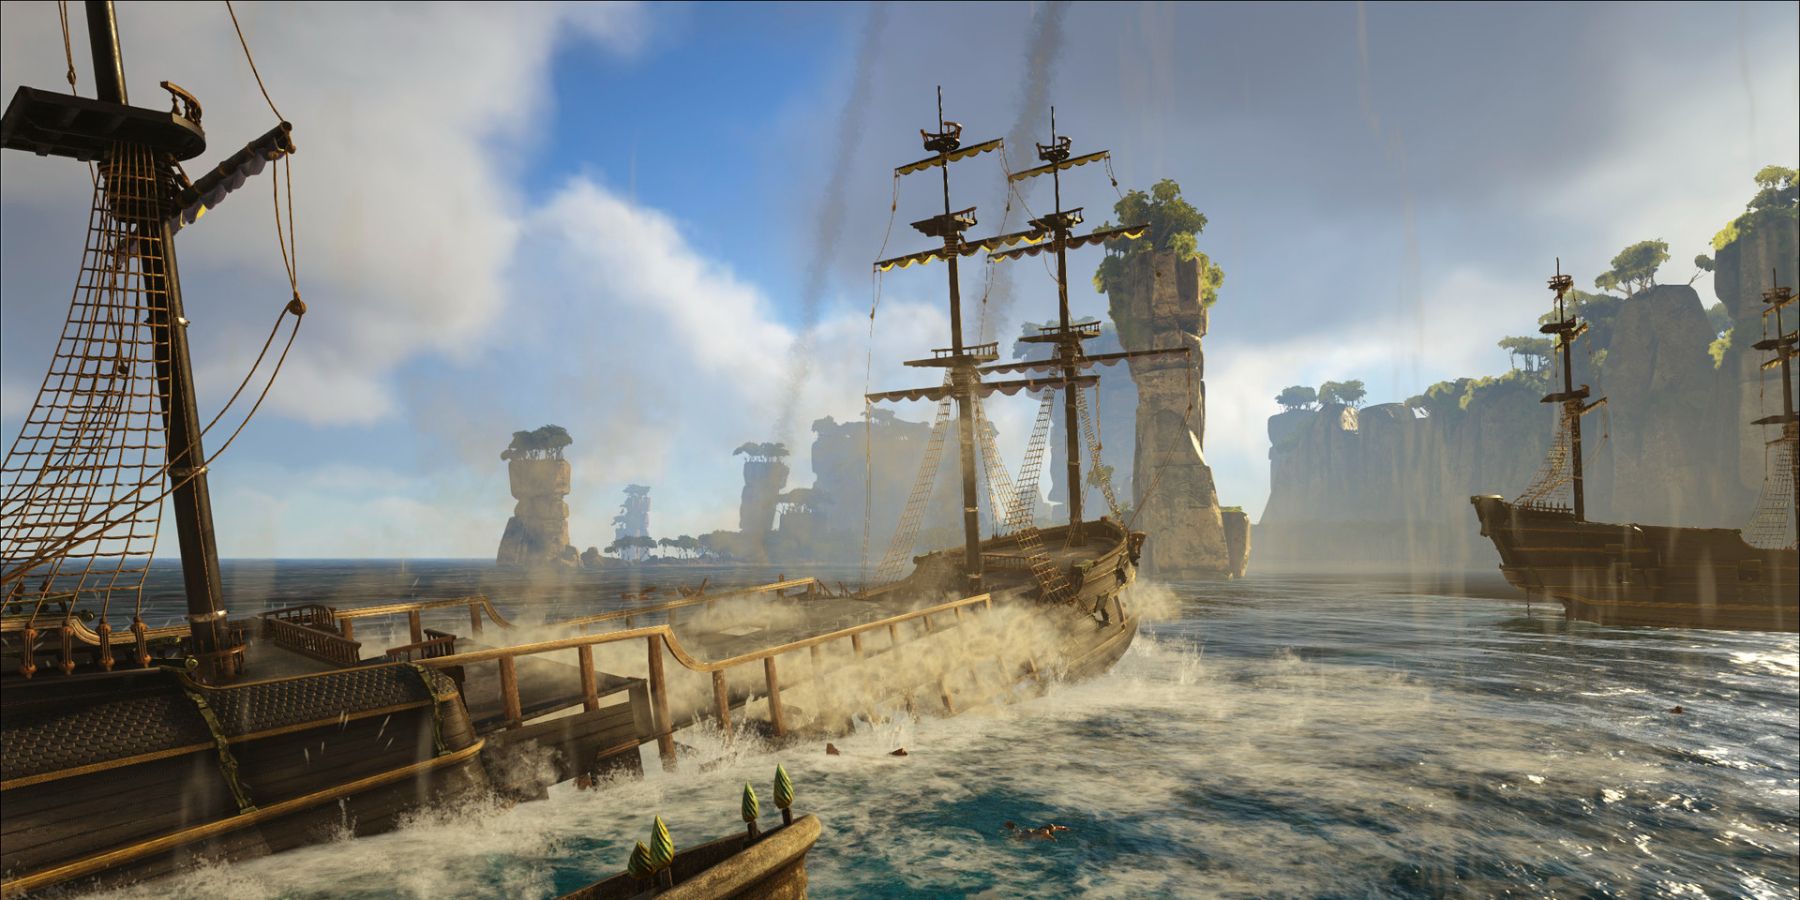 Naval battle scene in the Atlas video game.